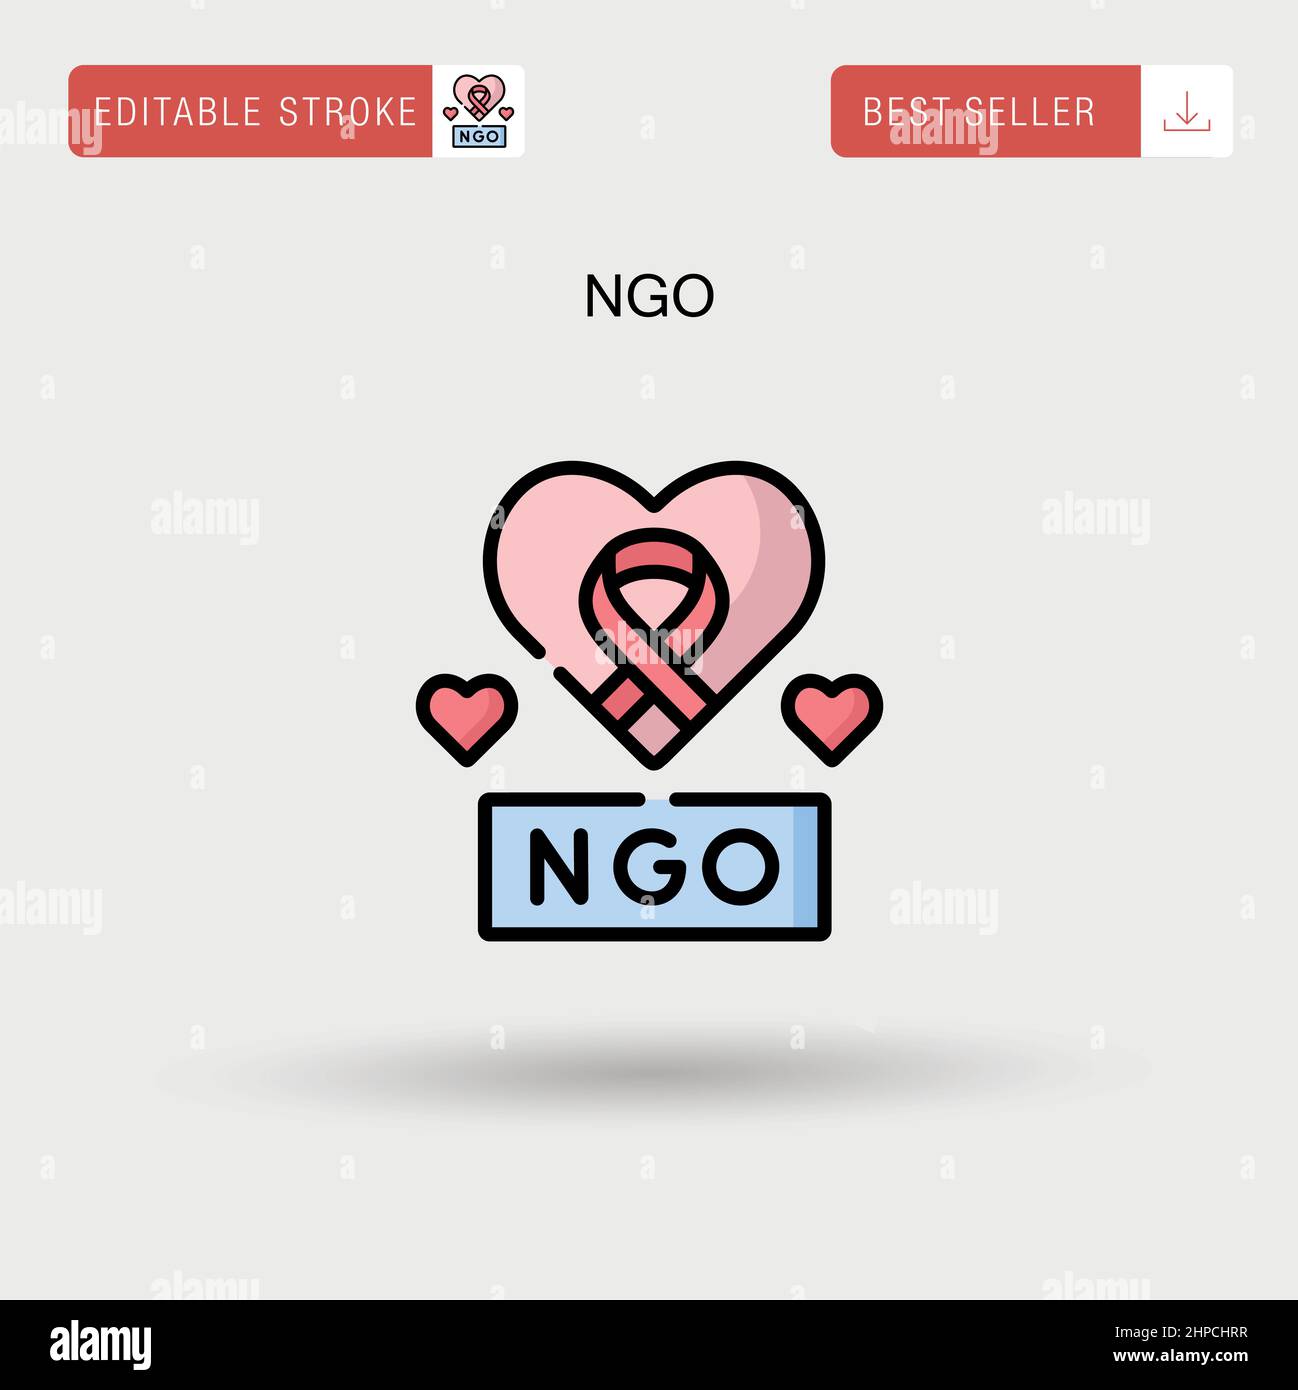 Einfaches NGO-Vektorsymbol. Stock Vektor